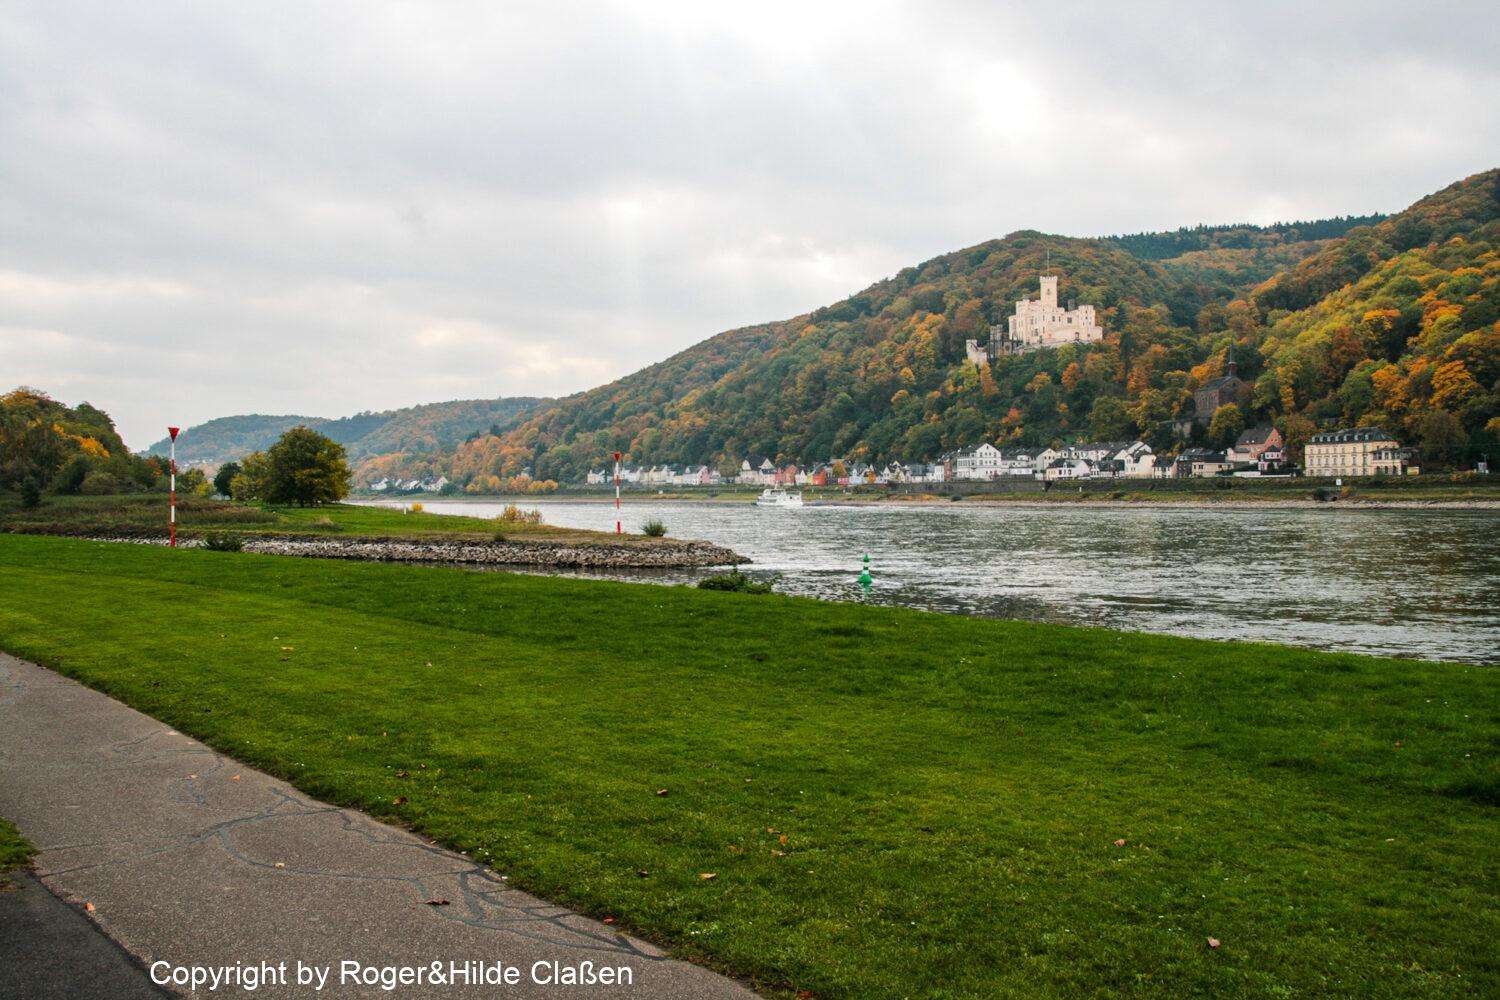 Fahrradtour entlang des Rheins bei Lahnstein. Im Hintergrund das Schloss Stolzenfels